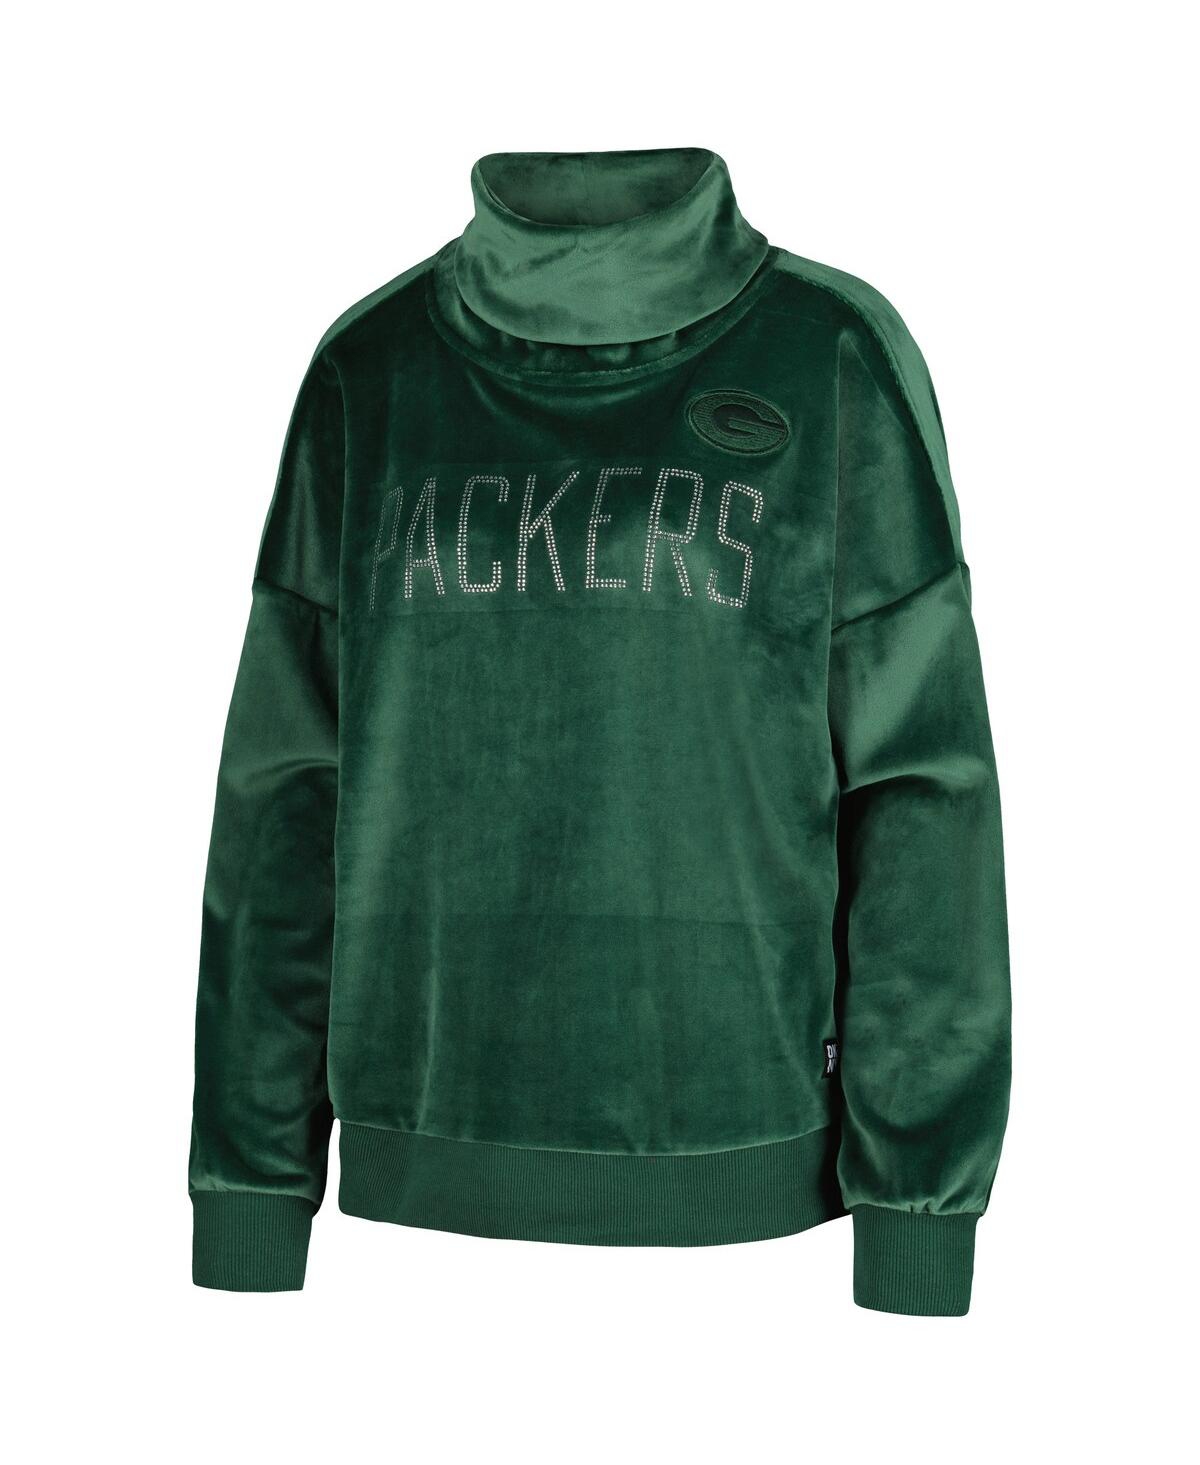 Shop Dkny Women's  Sport Green Green Bay Packers Deliliah Rhinestone Funnel Neck Pullover Sweatshirt